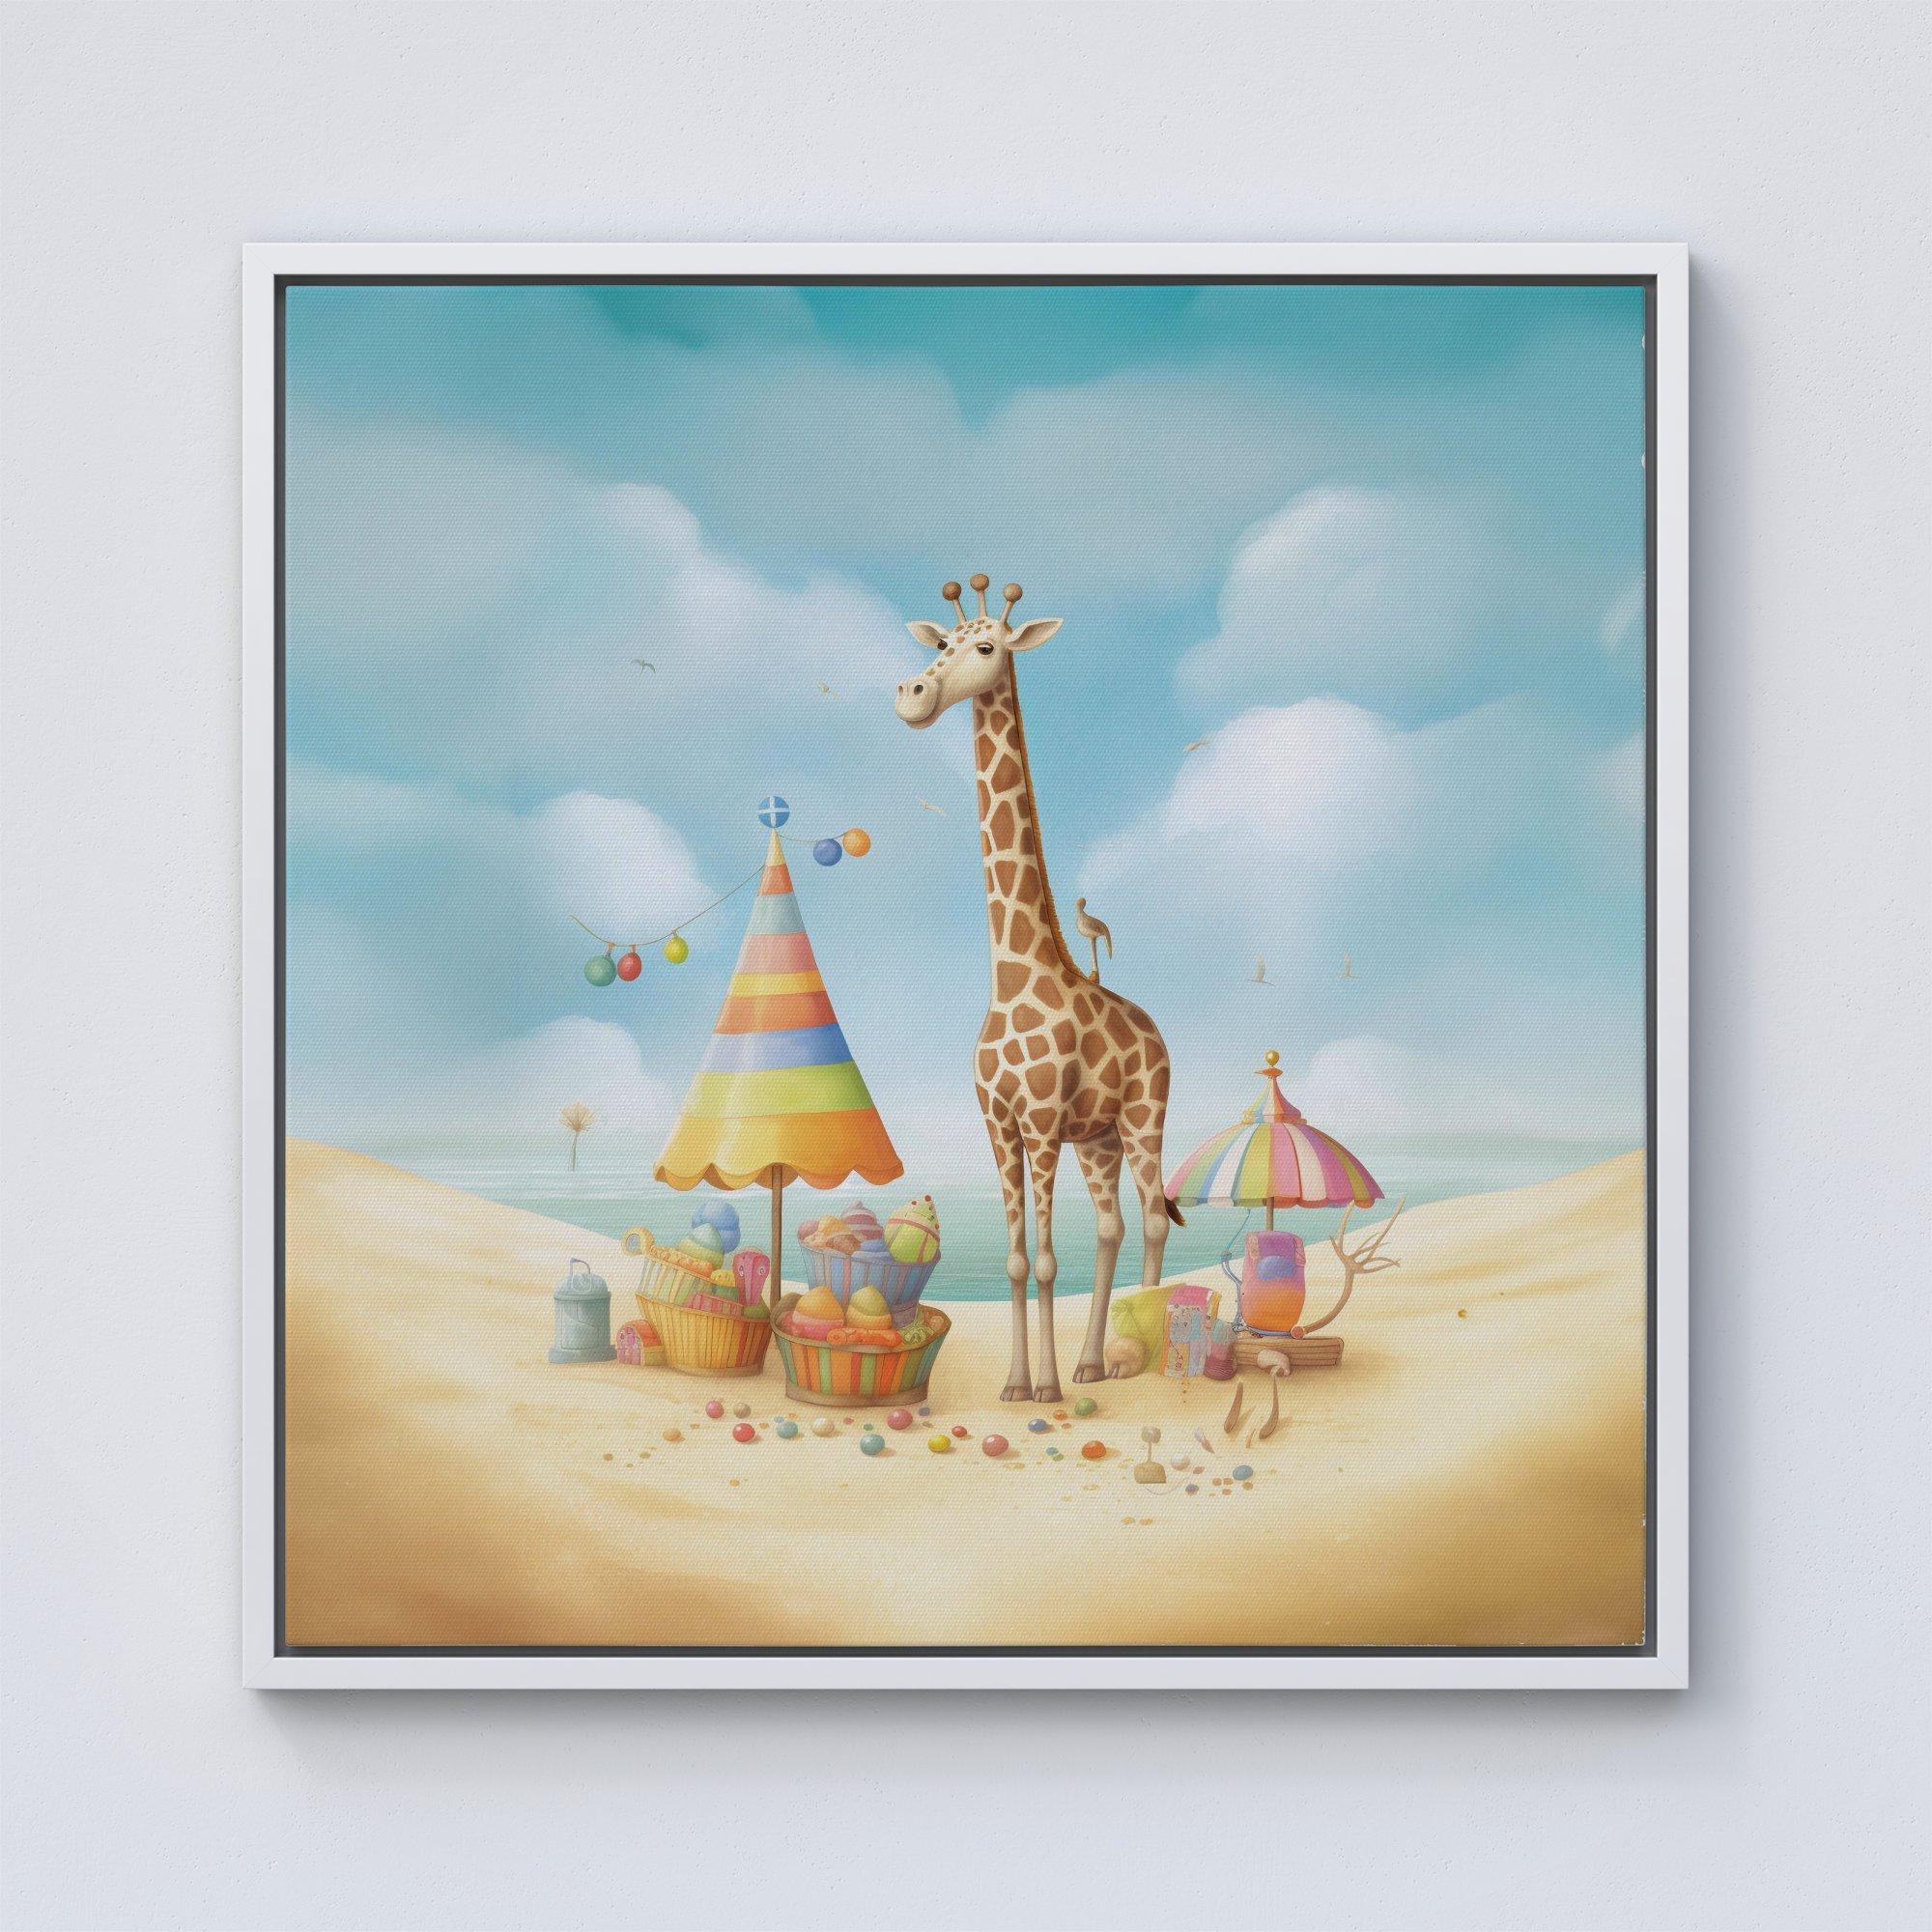 Giraffe On A Beach Holiday Framed Canvas